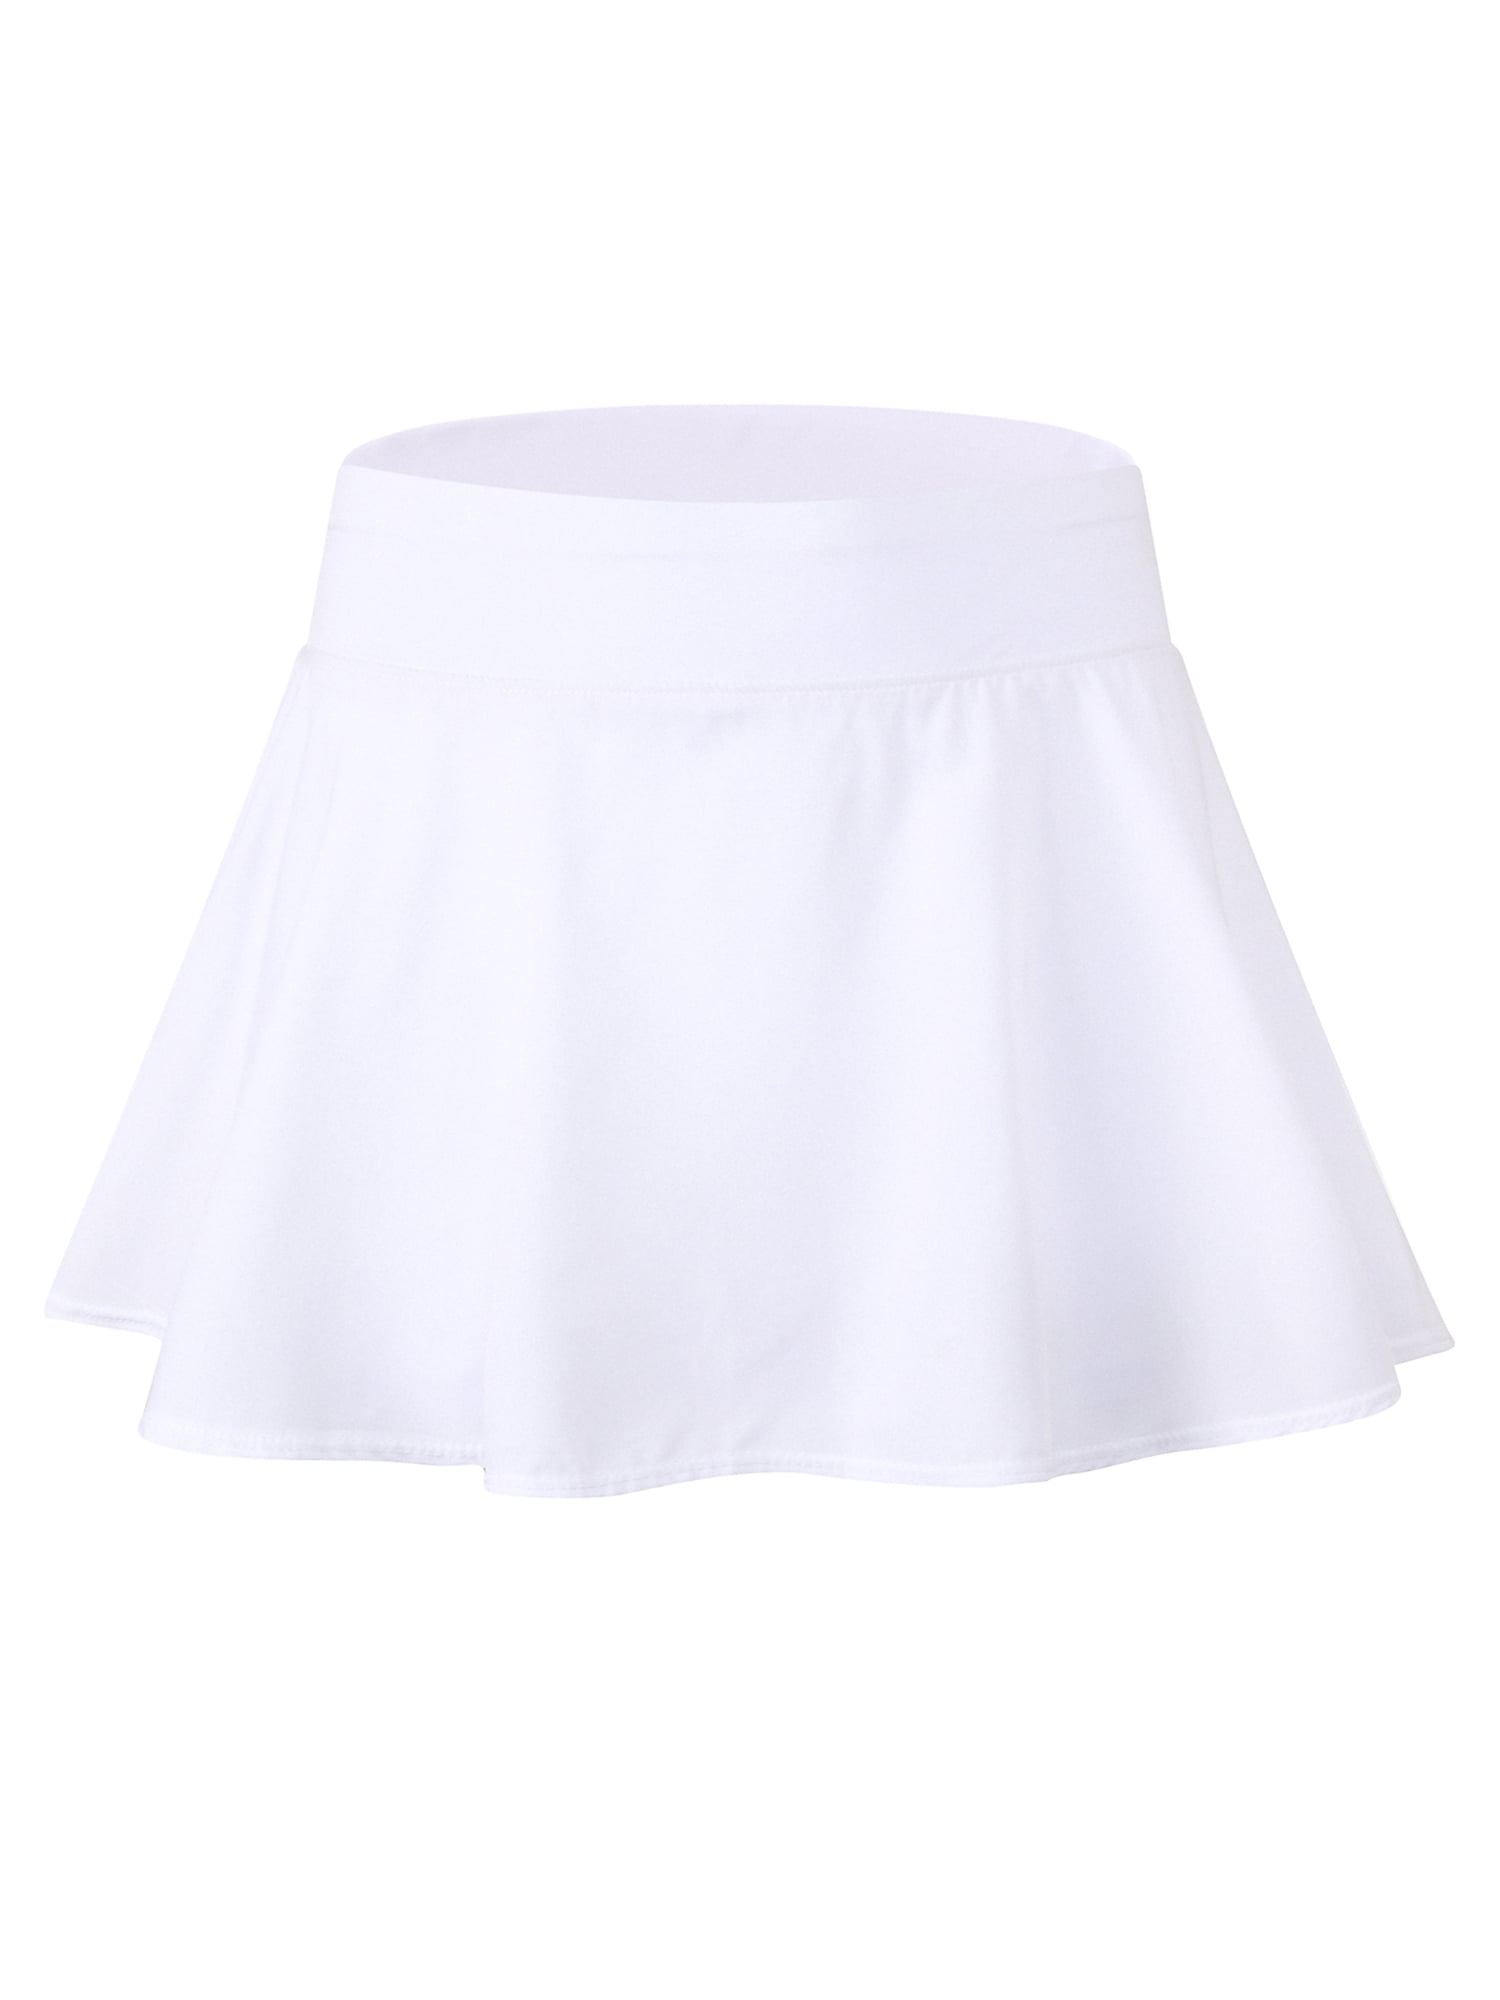 Plus Size Ladies Women Girls Running Tennis Skirts Pleated Golf Skort ...